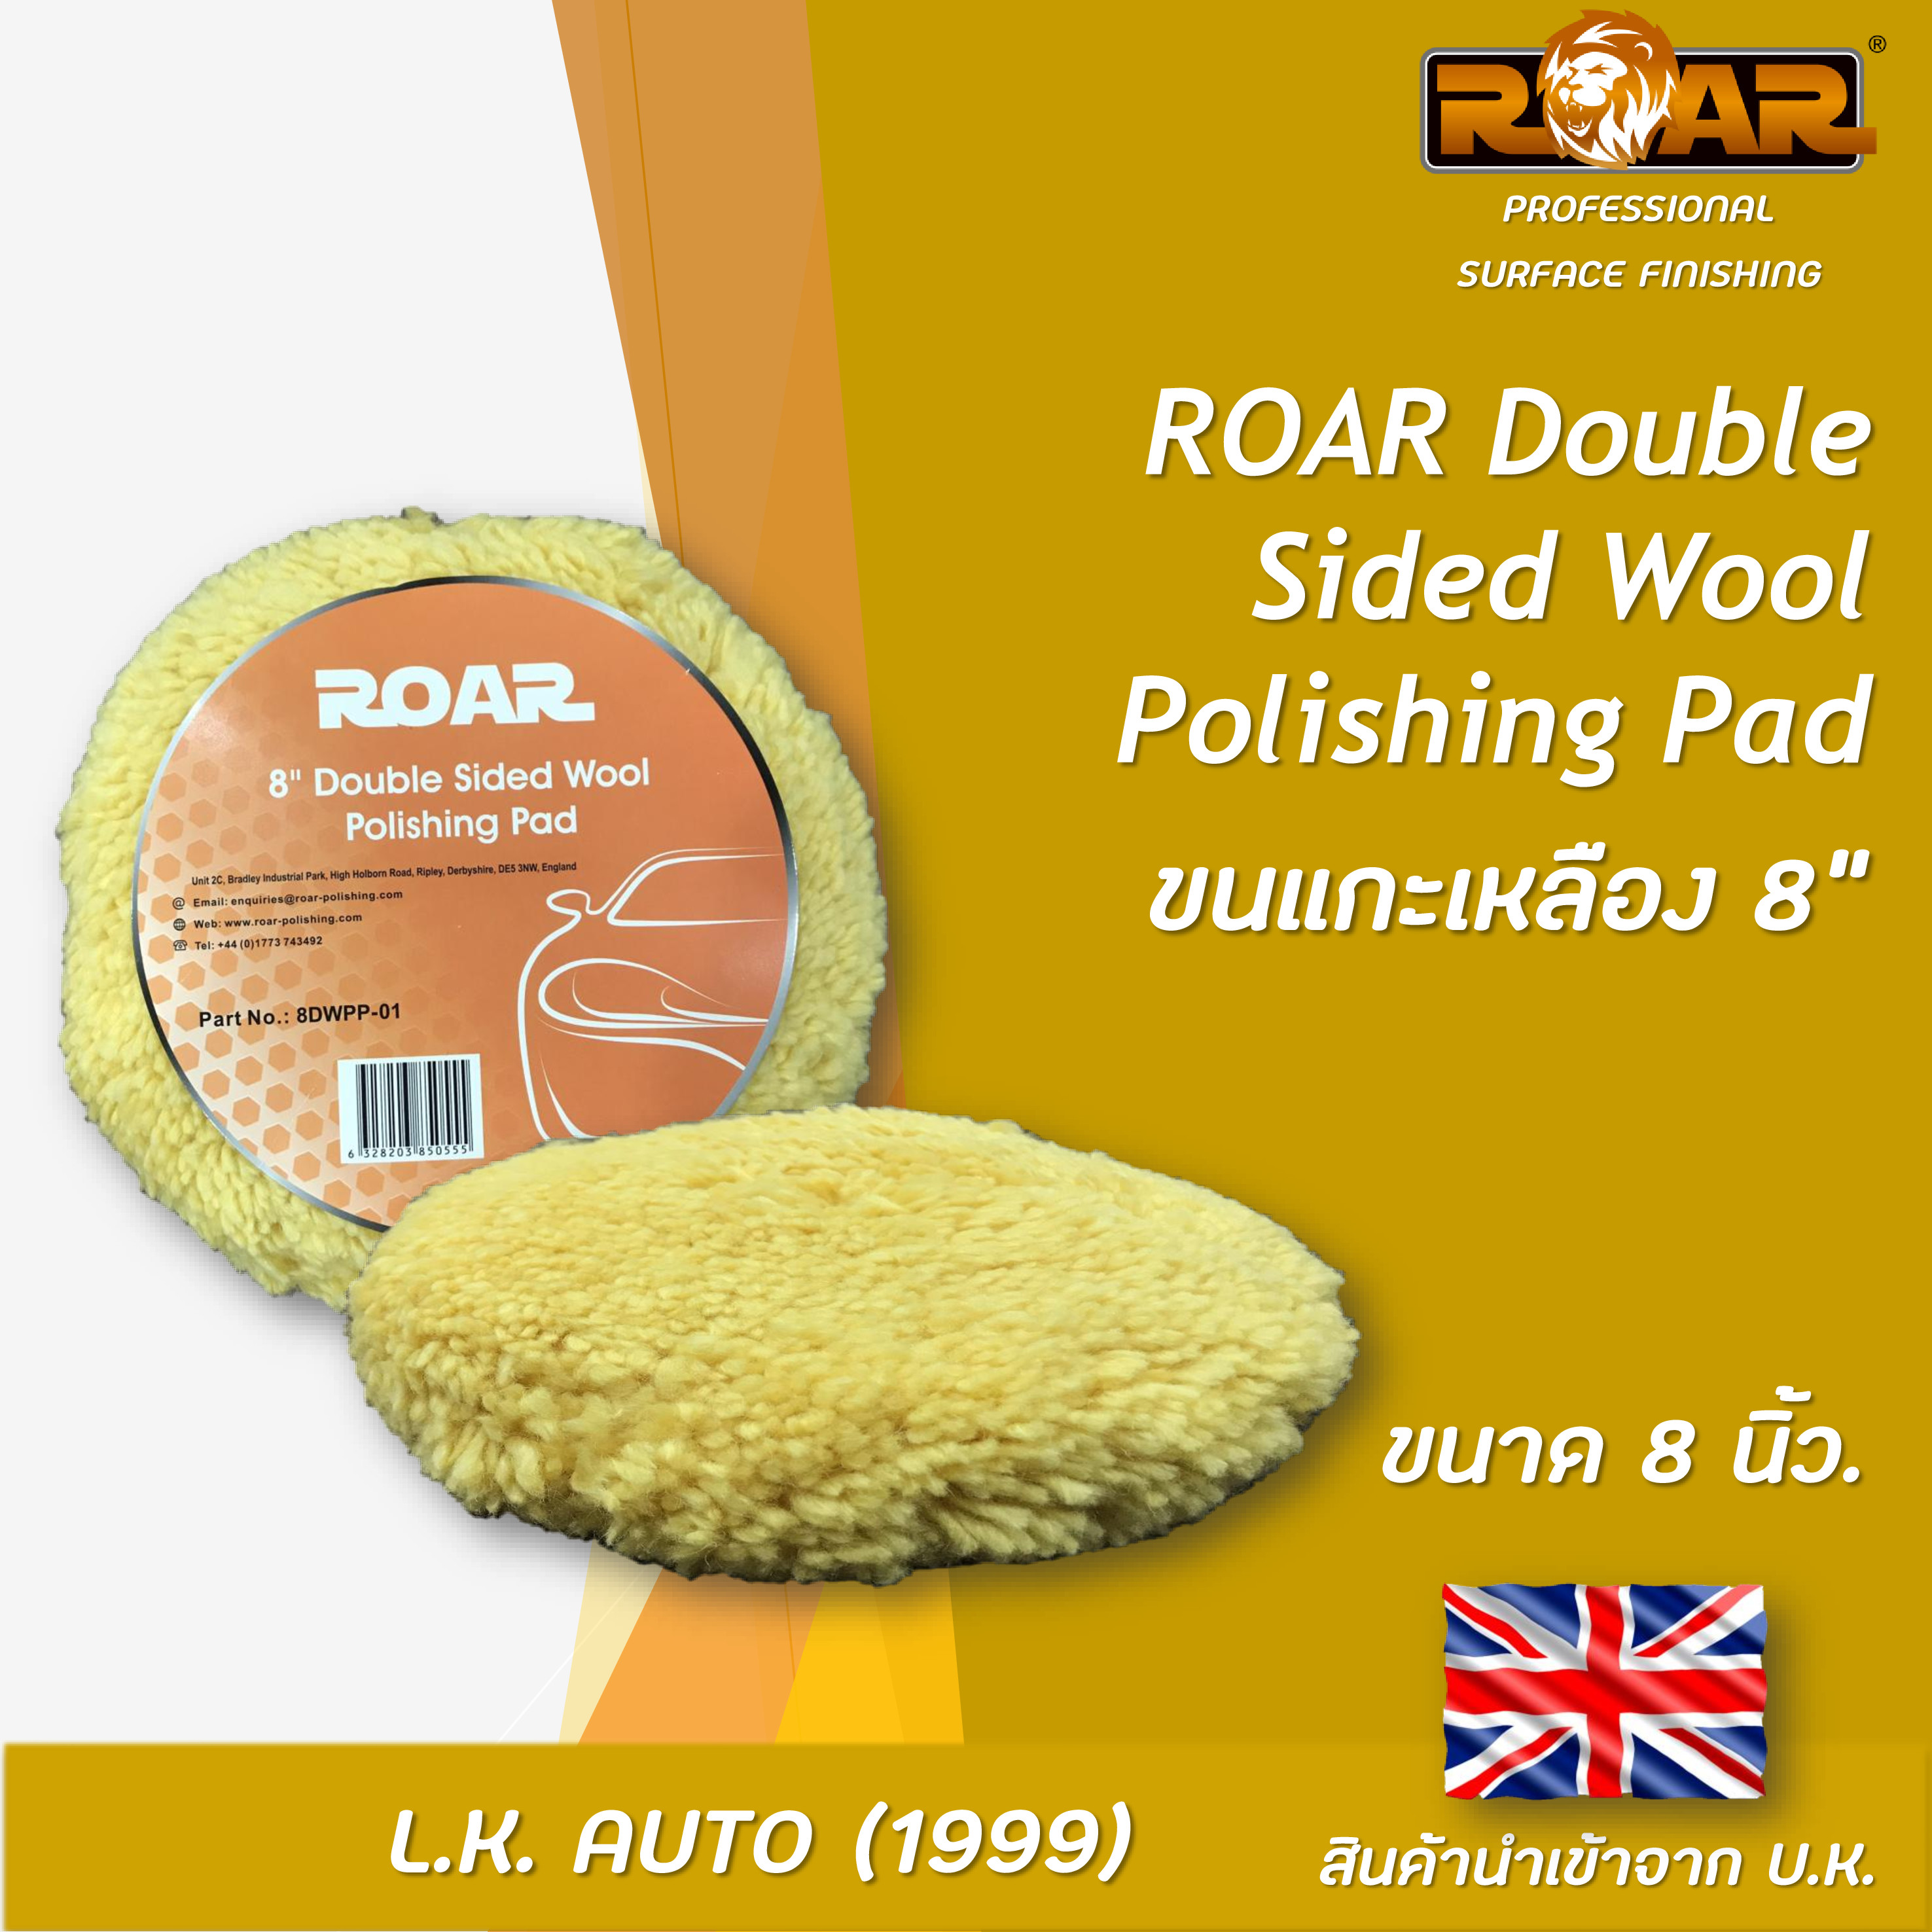 ROAR Double Sided Wool Polishing Pad